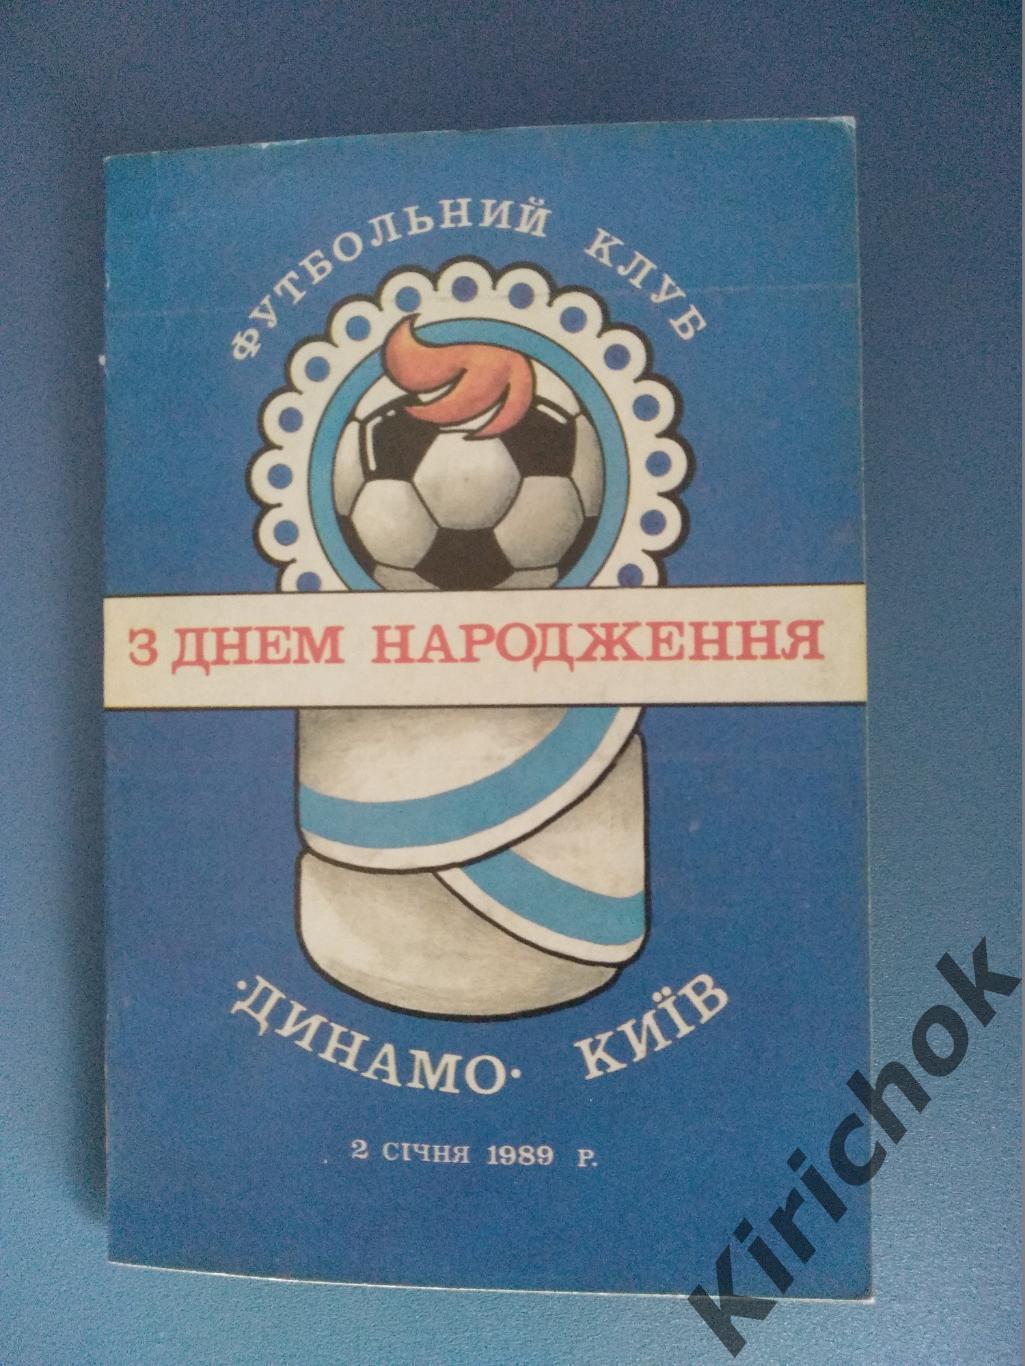 Буклет: Чемпионат СССР. Киев 1989